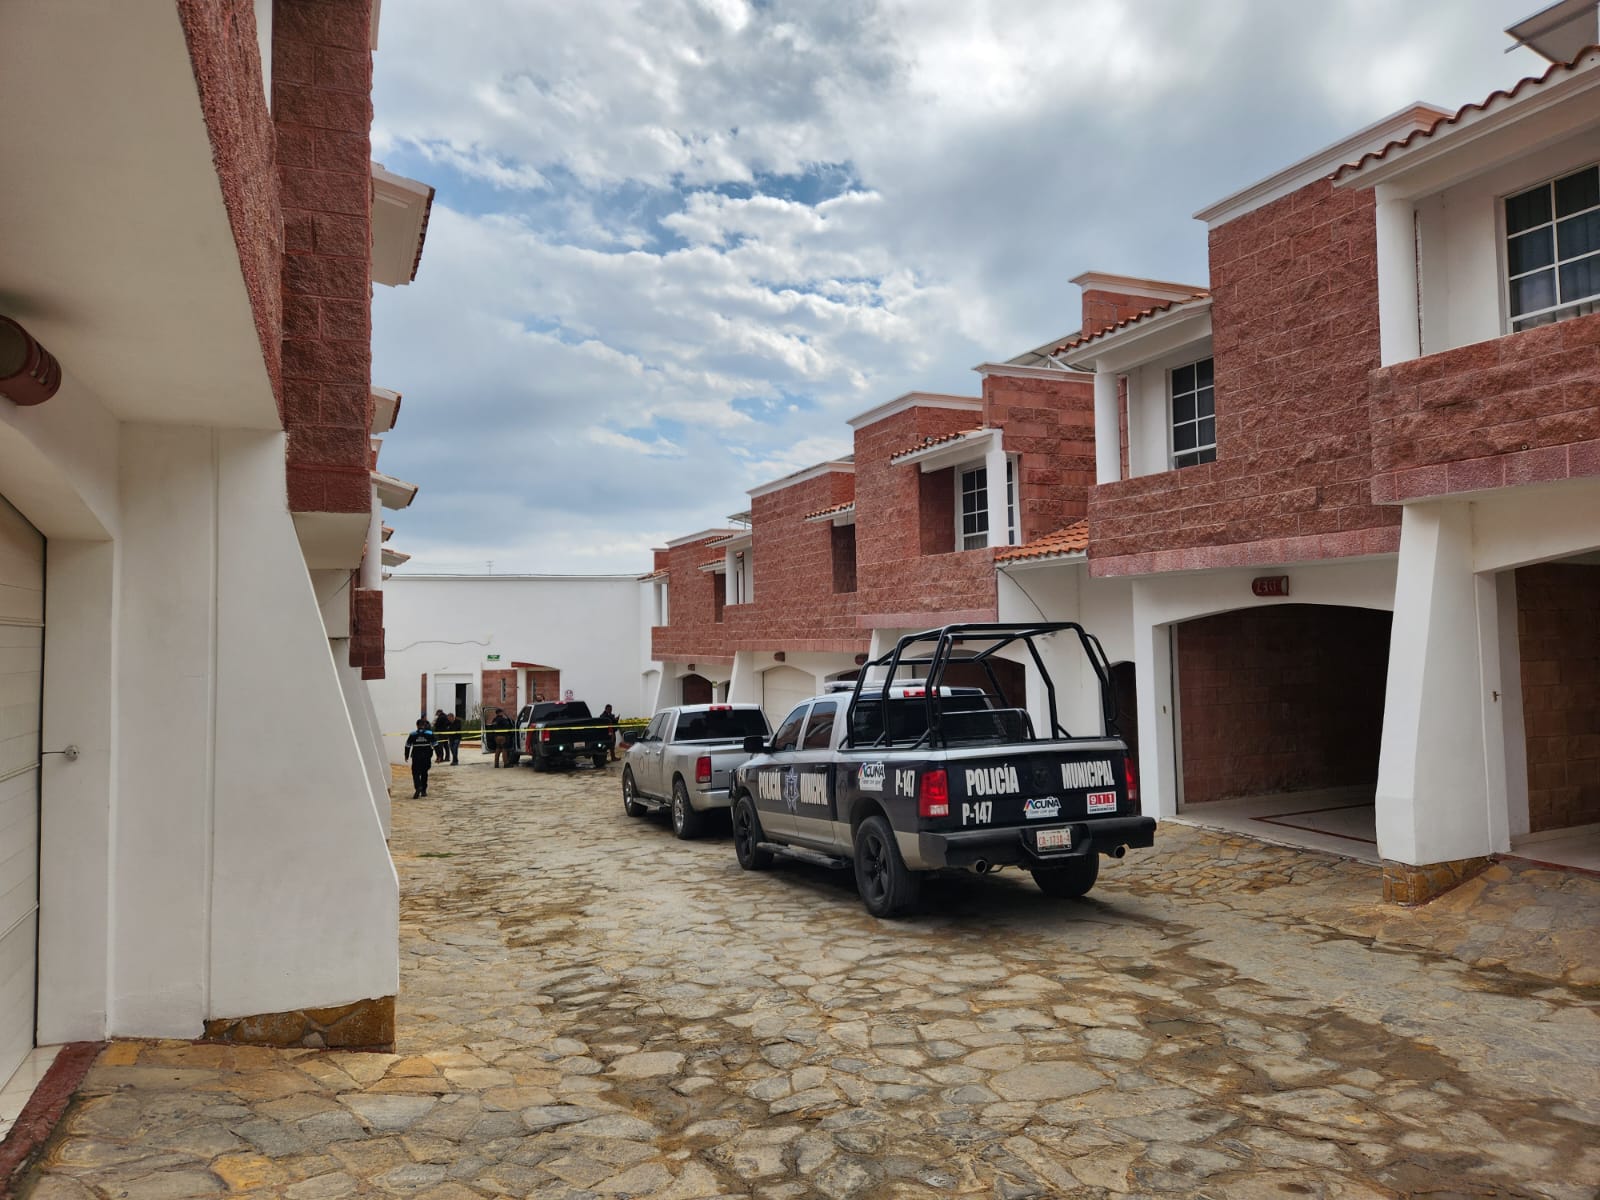 Los hechos se registraron en el interior del hotel La Finca, que se localiza en la colonia Morelos de la citada ciudad fronteriza.